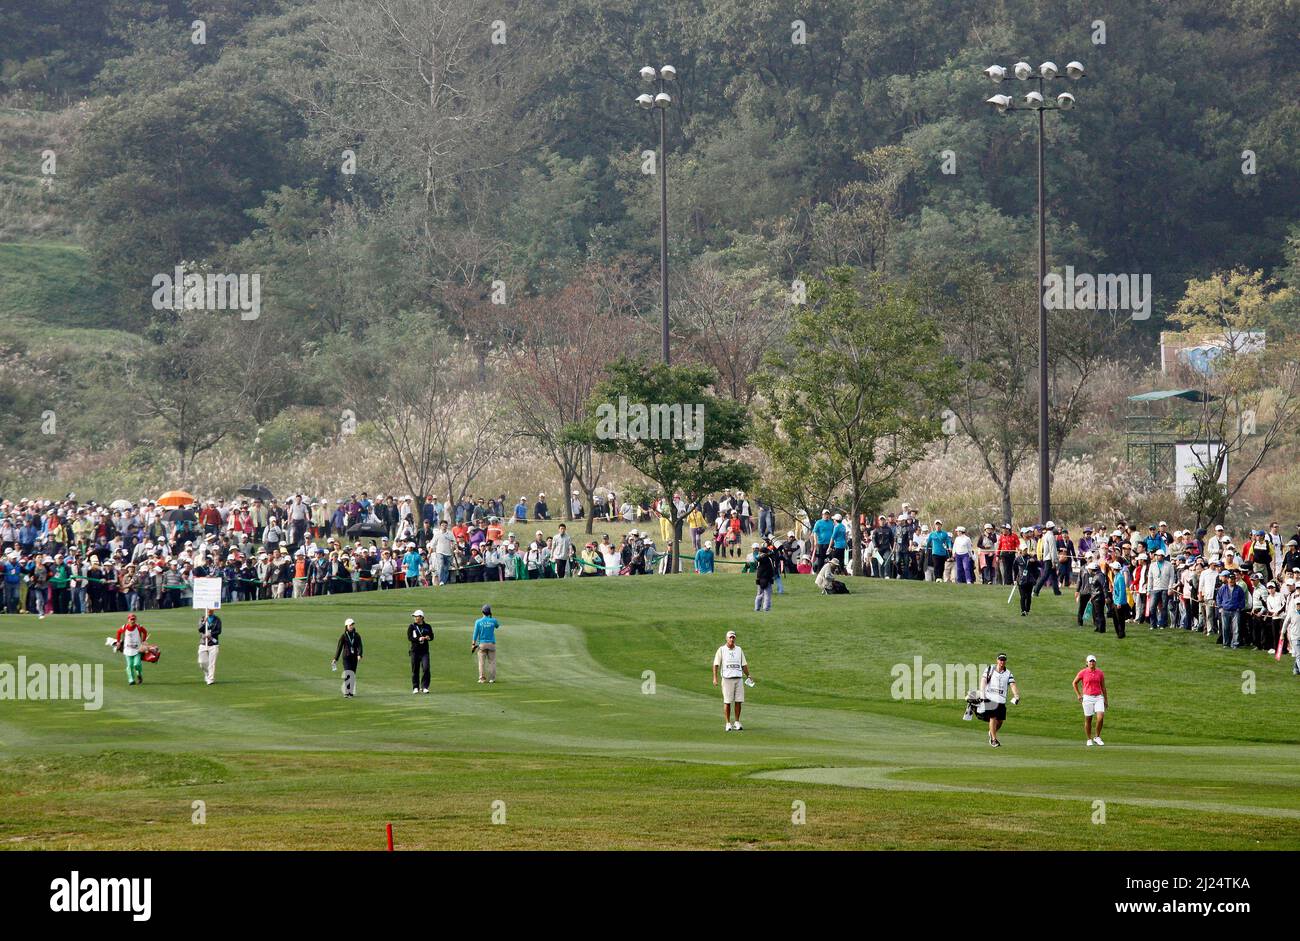 9 octobre 2011-Incheon, Corée du Sud-des spectateurs regardent l'action sur le 18th trous lors de la finale du championnat LPGA par Hana Bank au club de golf SKY72 à Incheon le 9 octobre 2011, Corée du Sud. Banque D'Images